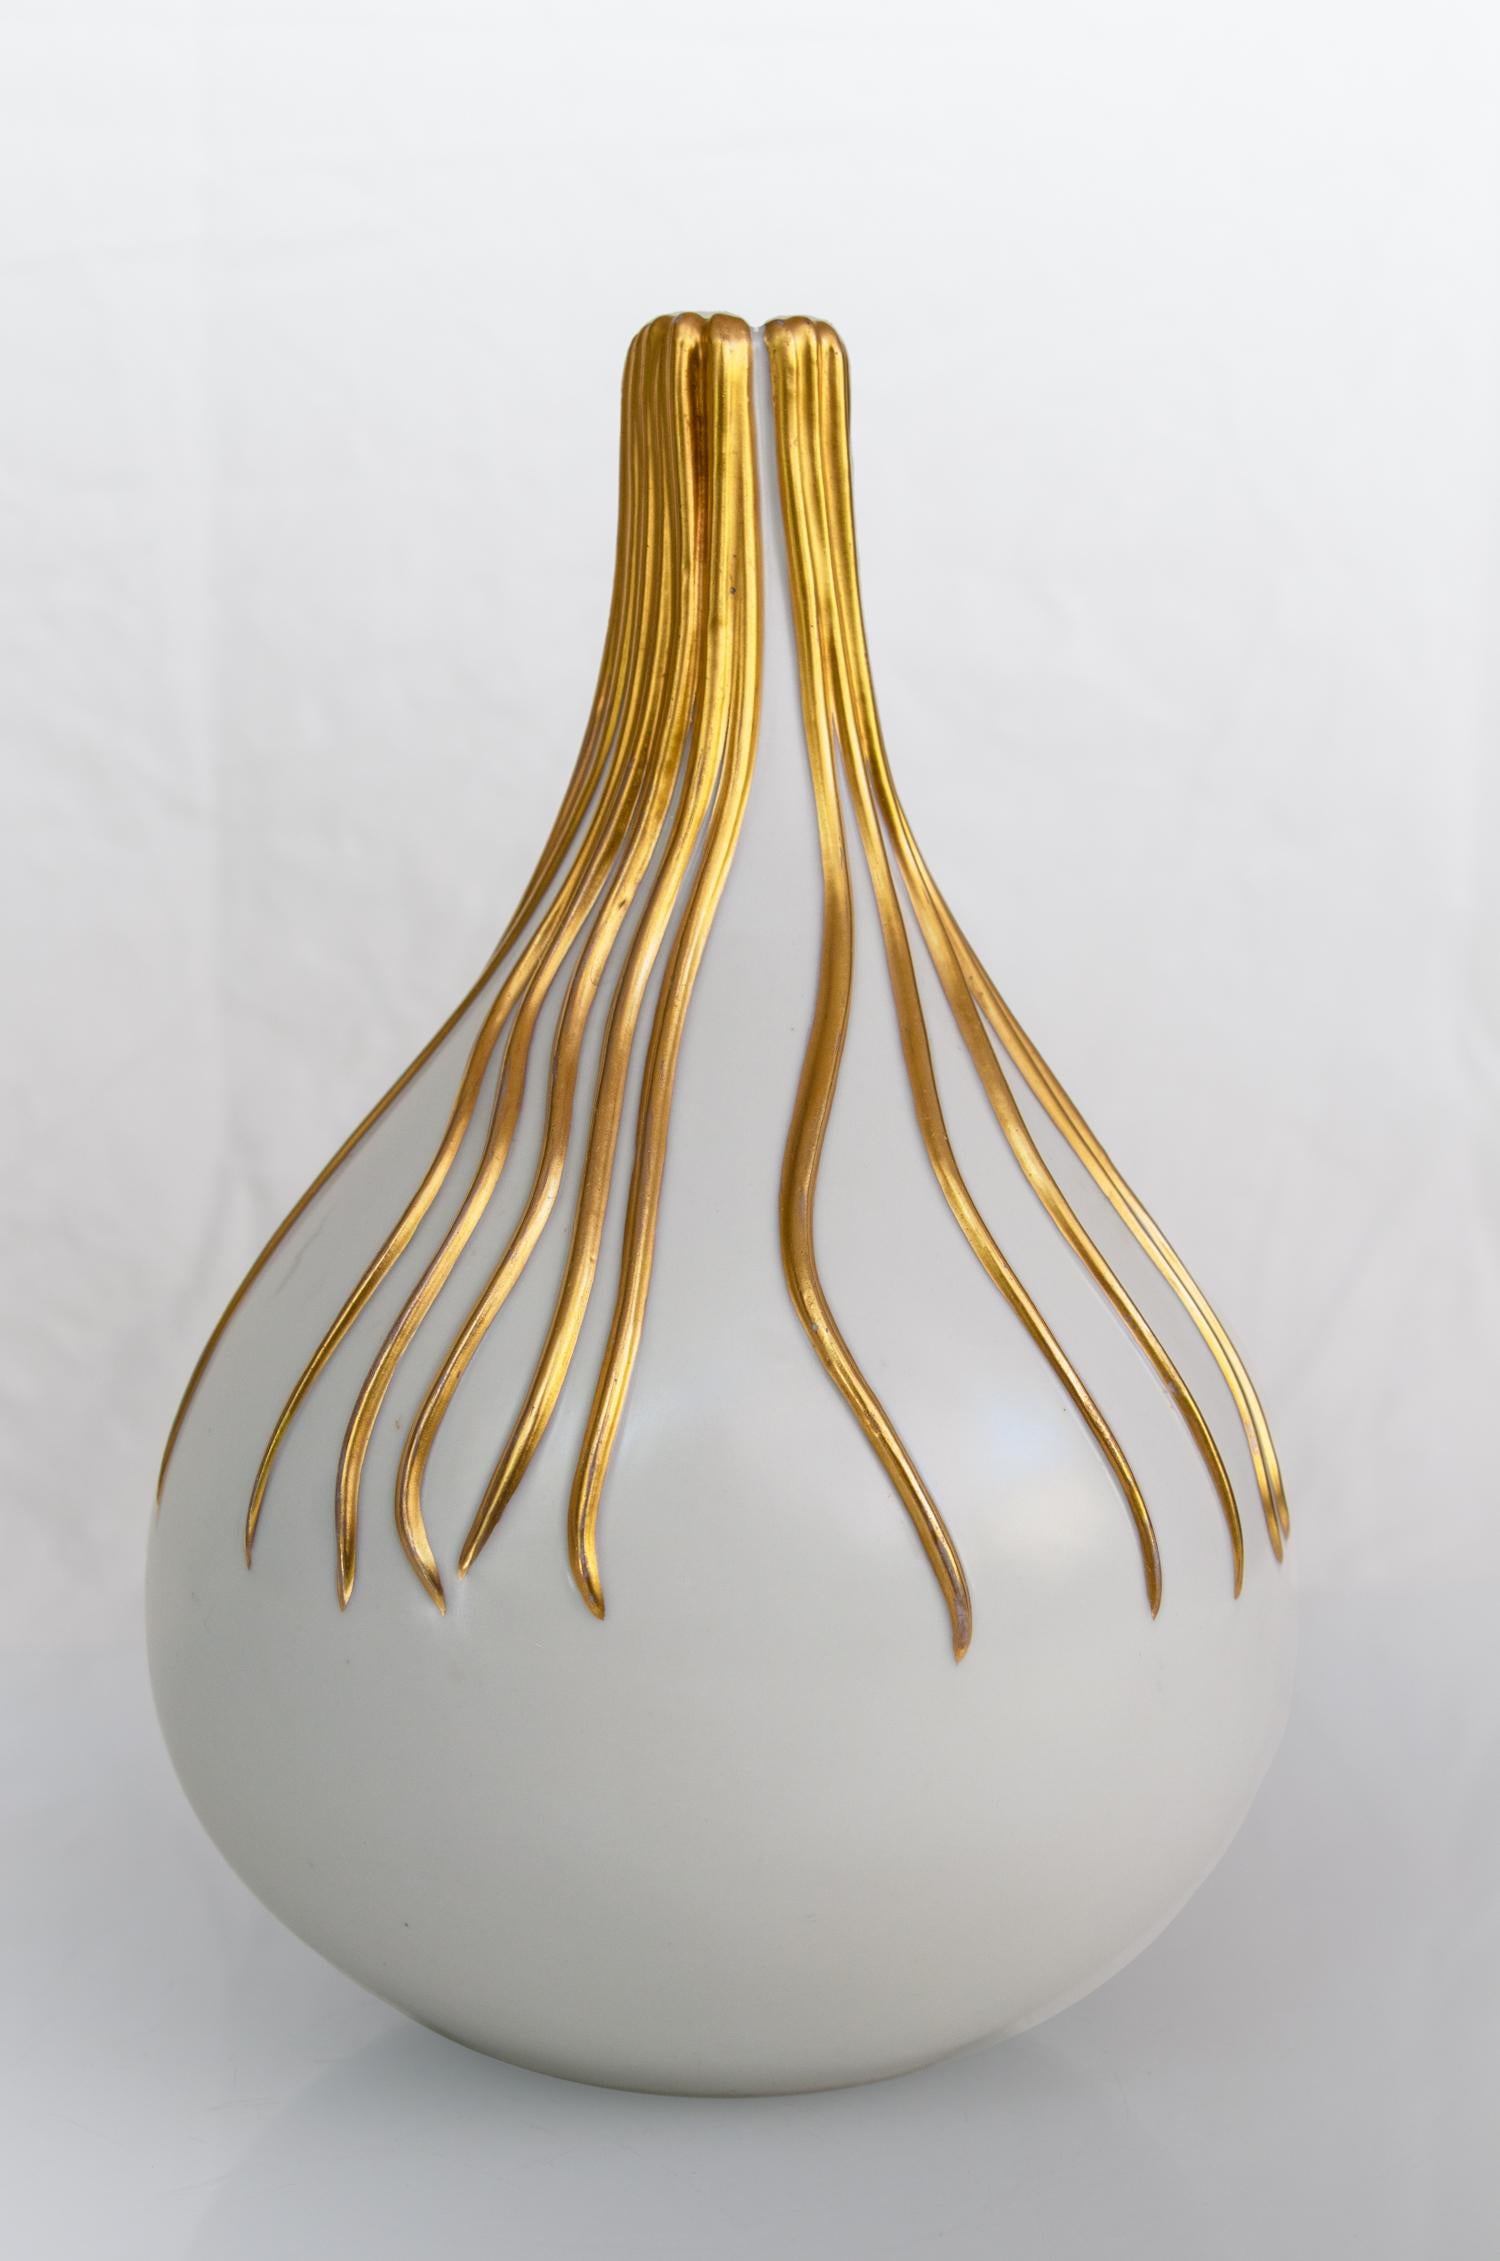 Keramikvase, entworfen von Giovanni Gariboldi in den 1930er Jahren für Richard Ginori, San Cristoforo, Italien.

Zwiebelförmige weiße Keramikvase mit kleiner Öffnung und Goldvergoldung.
Richard - Ginori, eine der berühmtesten